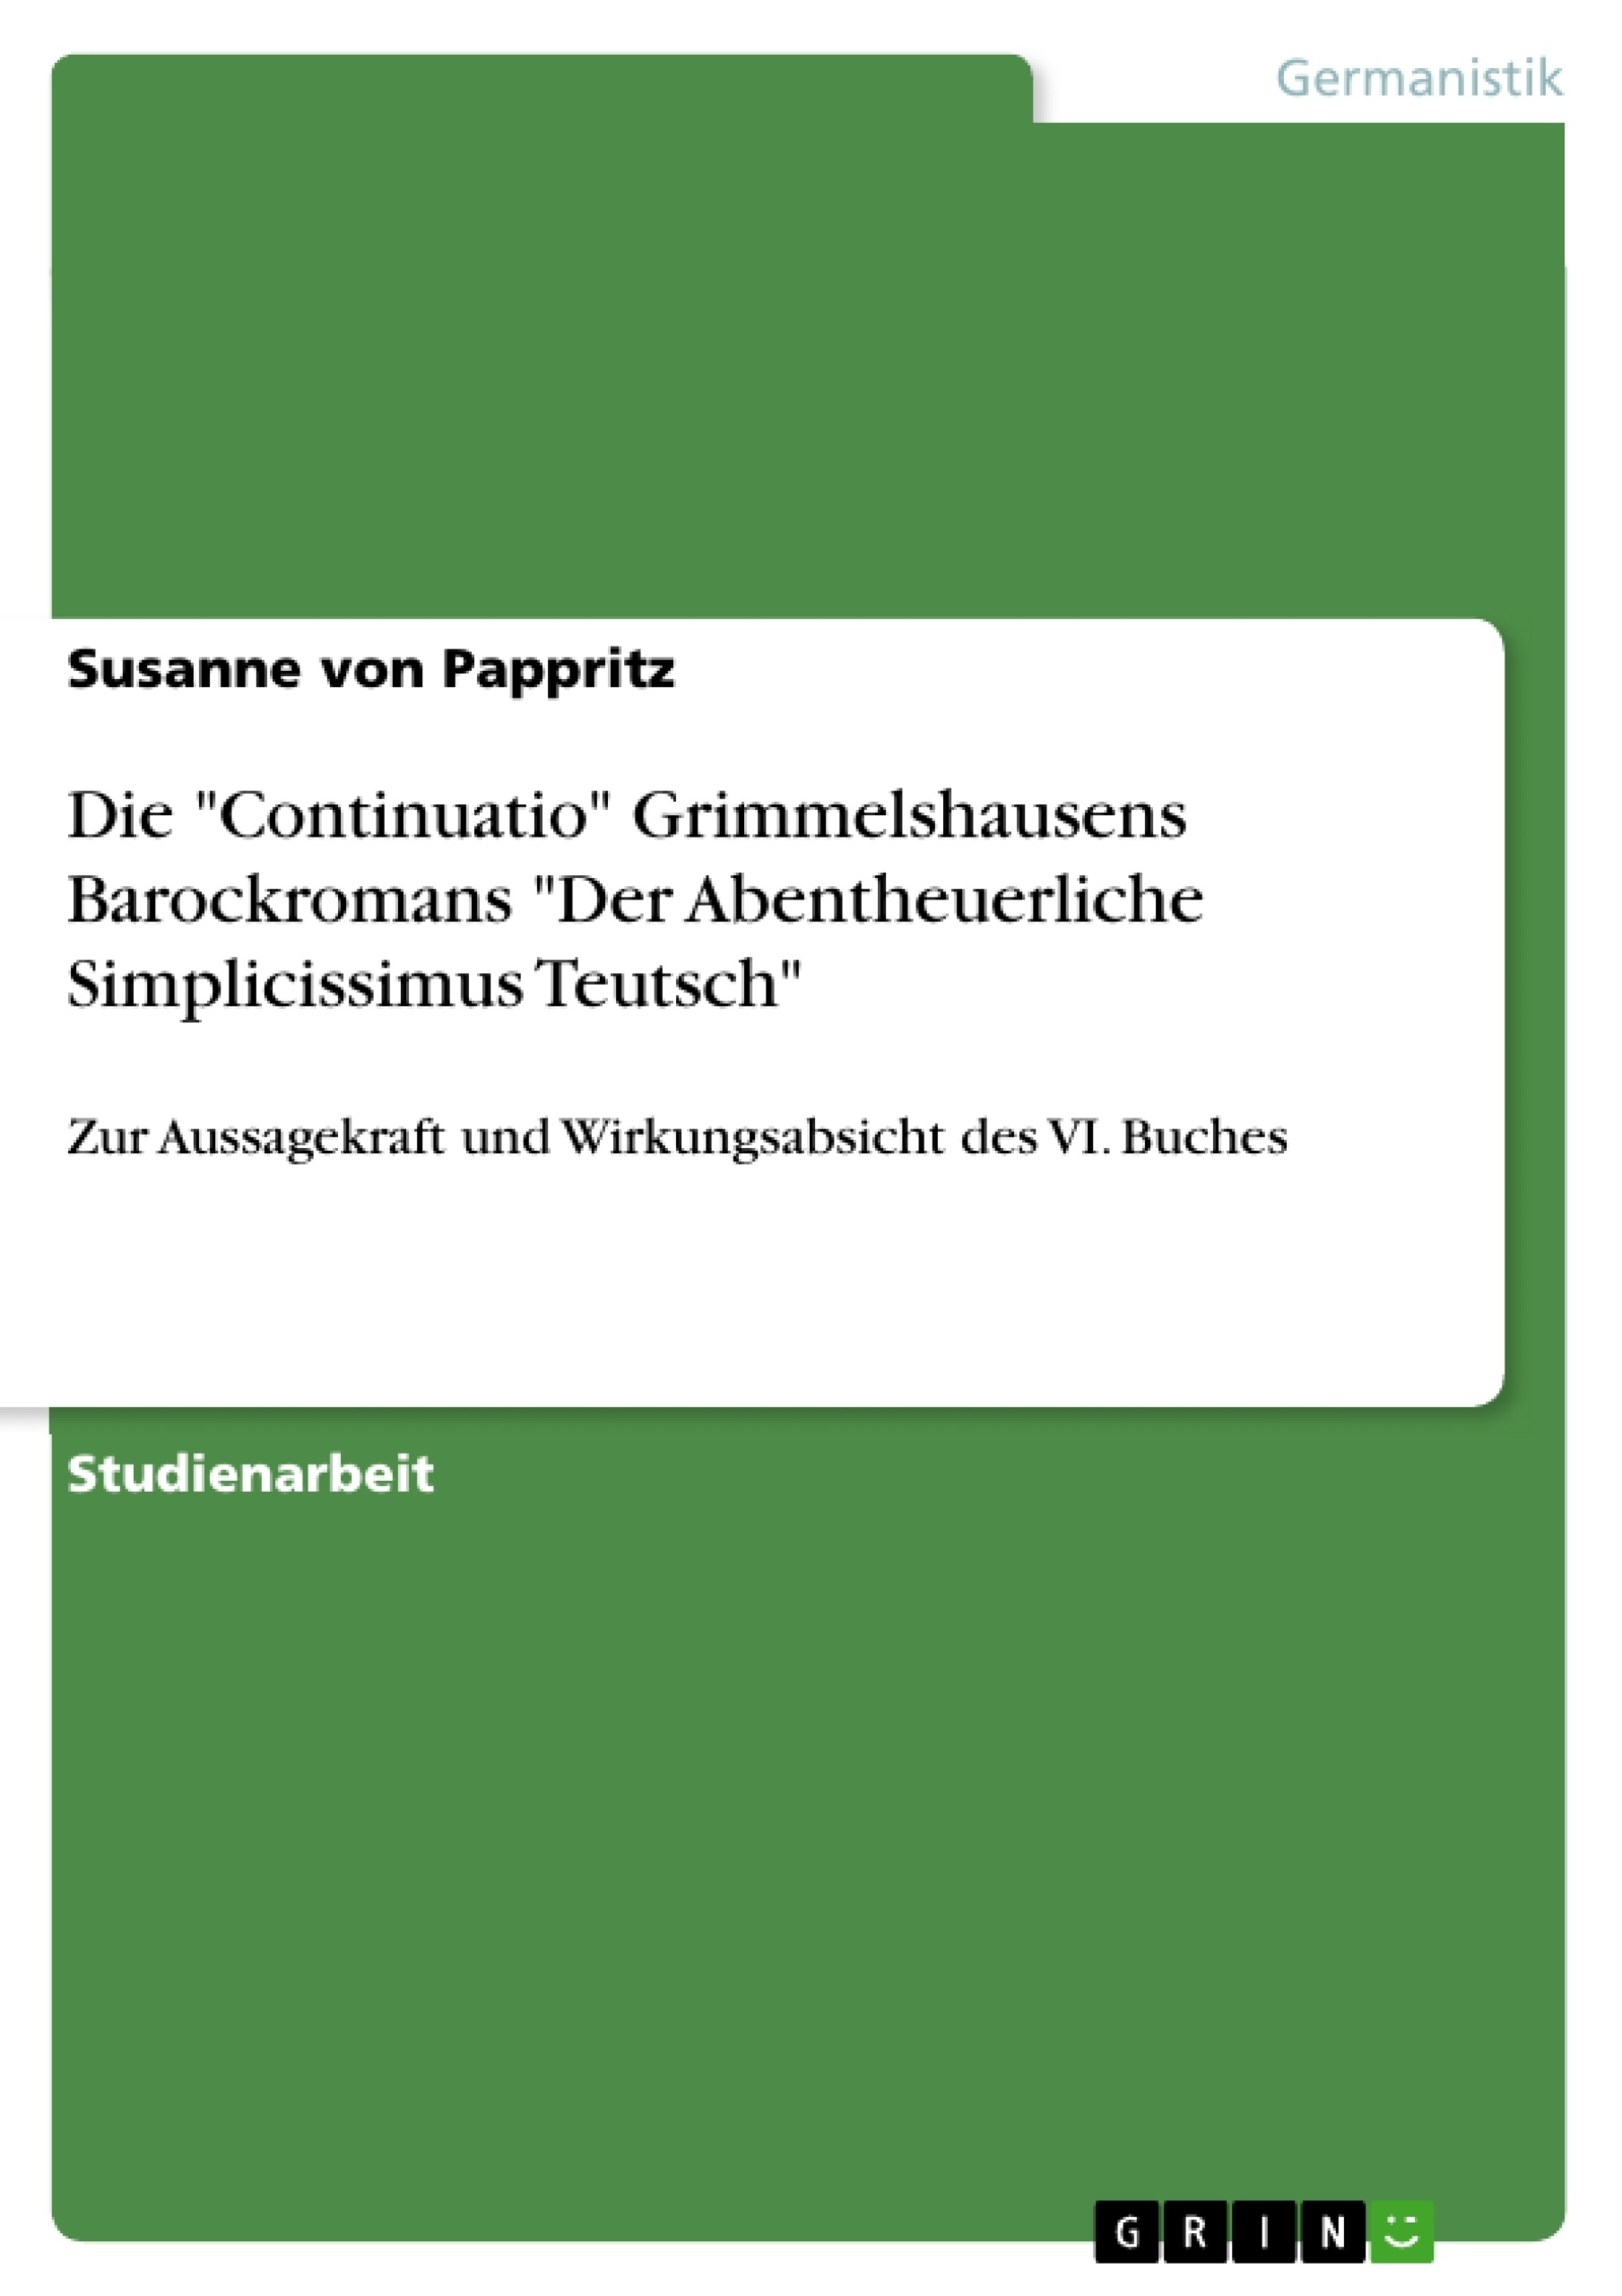 Title: Die "Continuatio" Grimmelshausens Barockromans "Der Abentheuerliche Simplicissimus Teutsch"